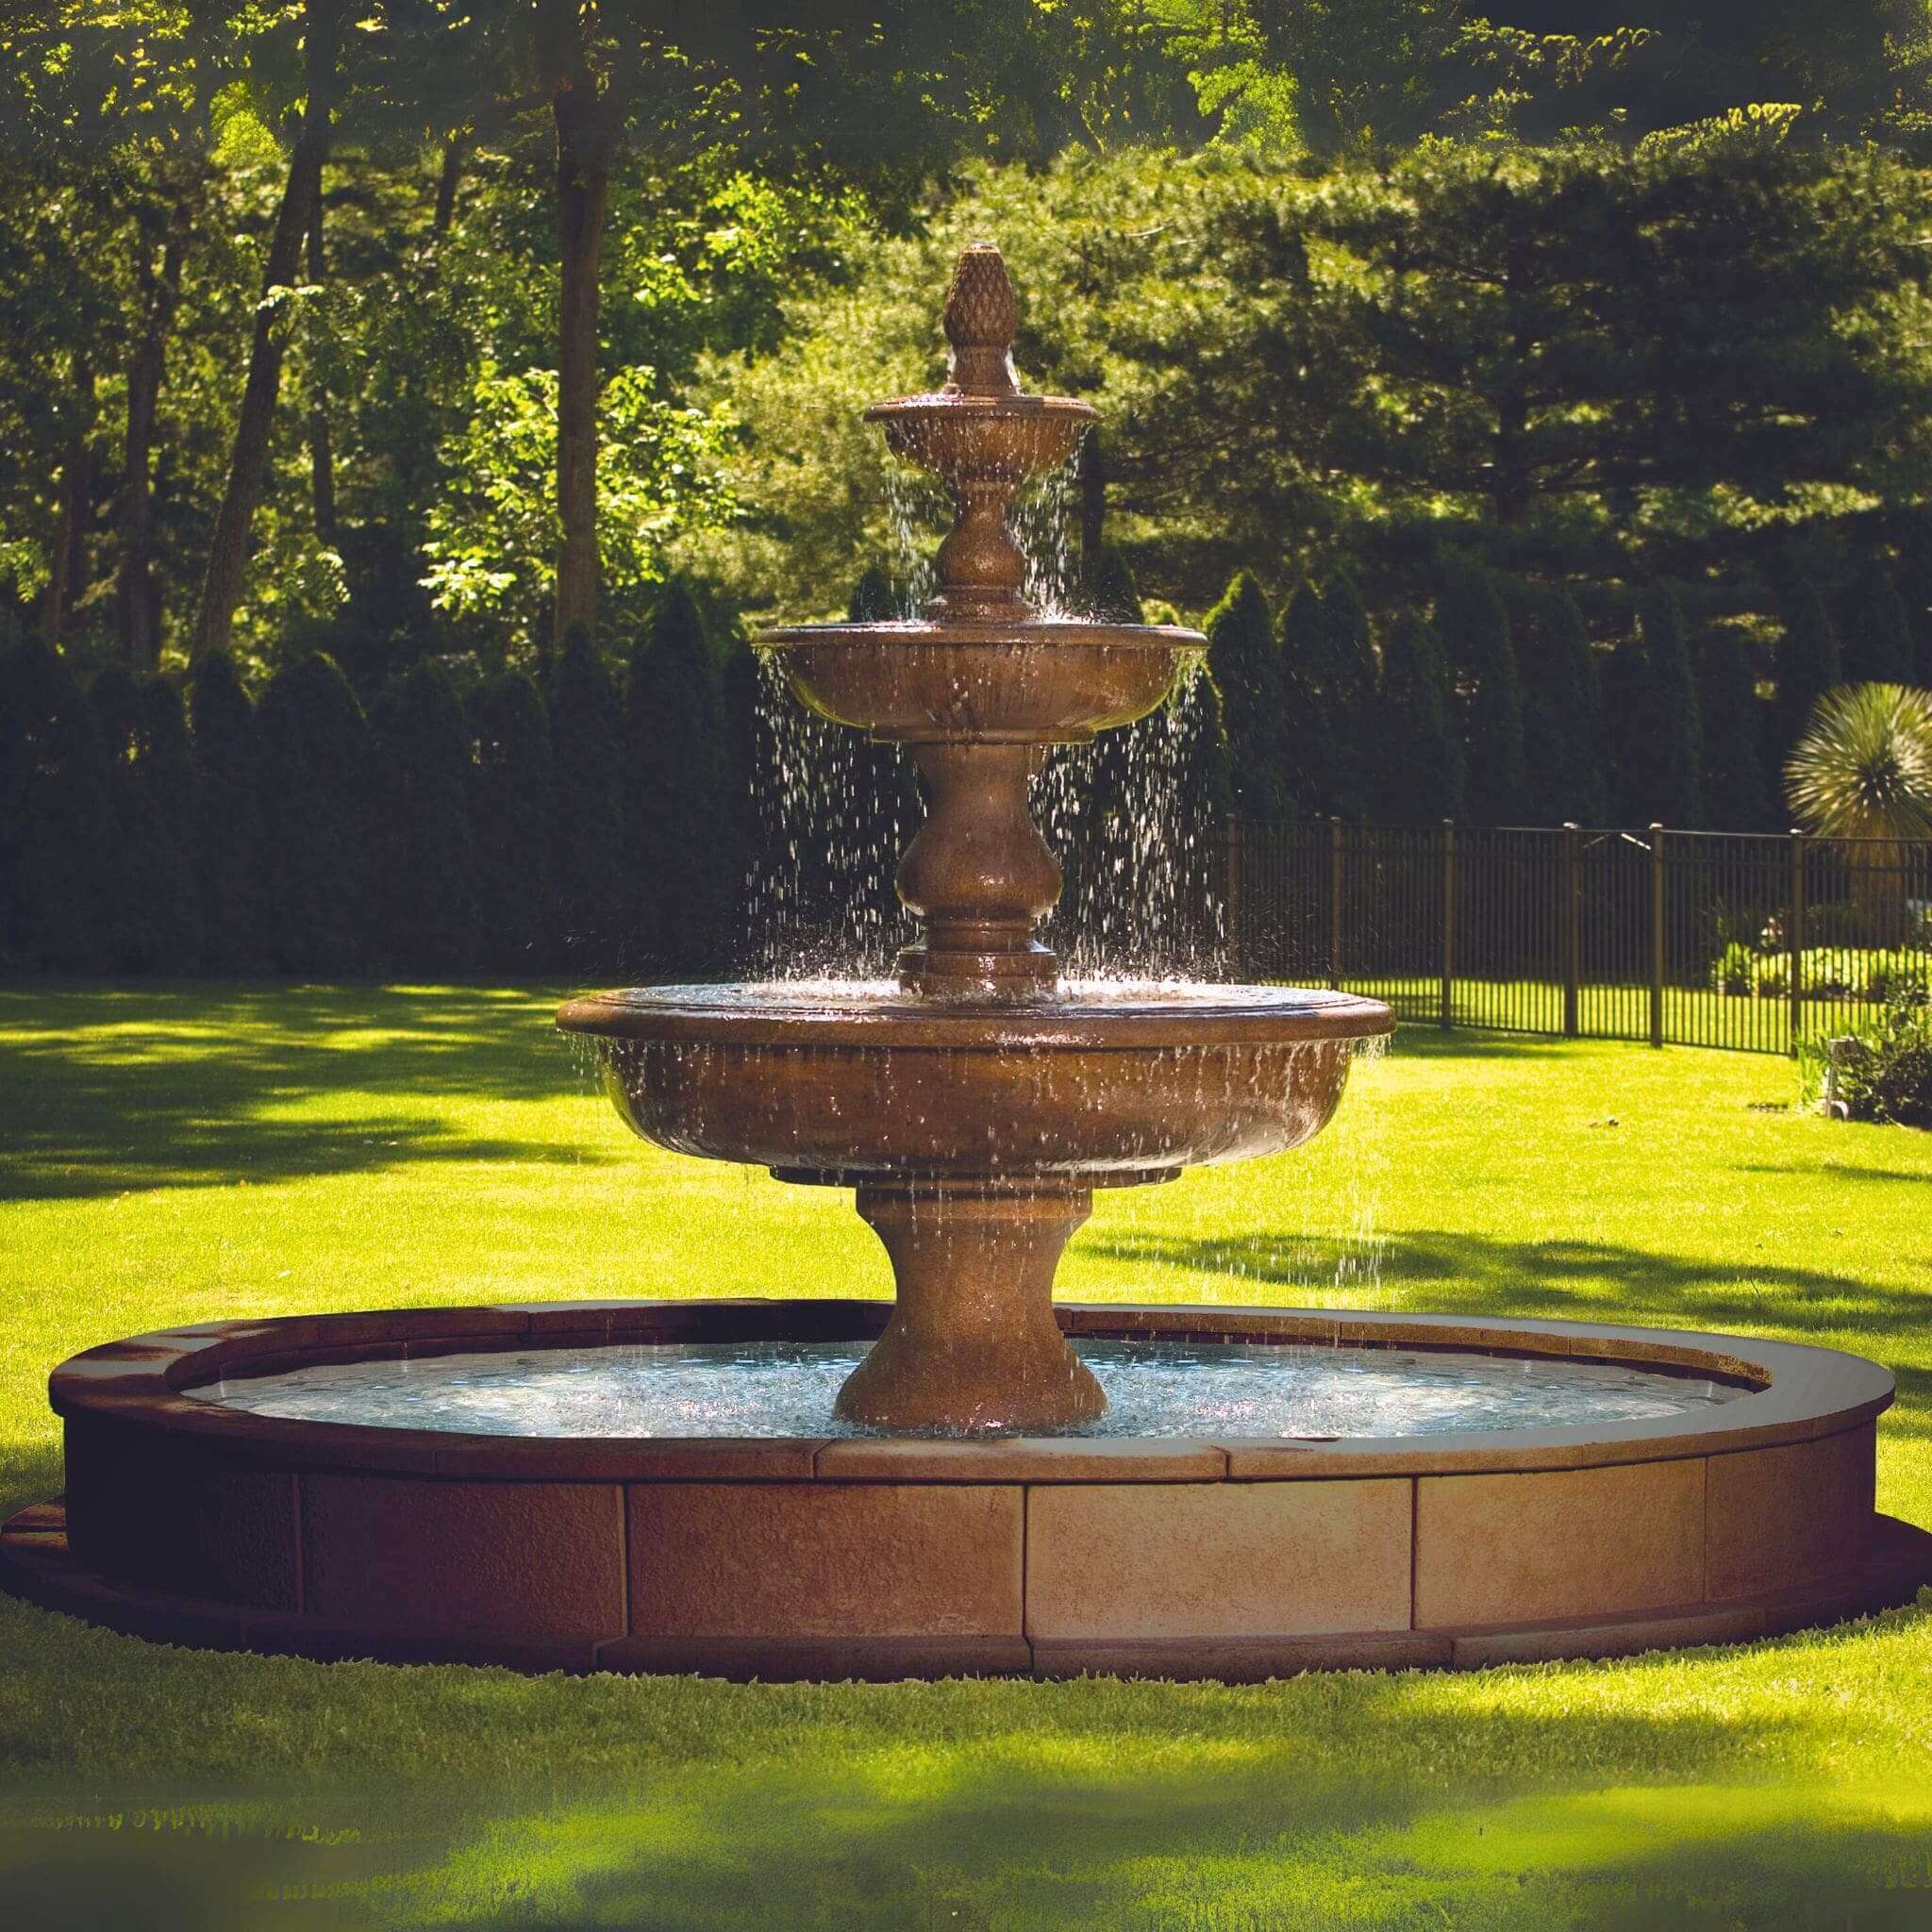 The Monticello 3-Tier Concrete Fountain w/Pool - Massarellis #3703